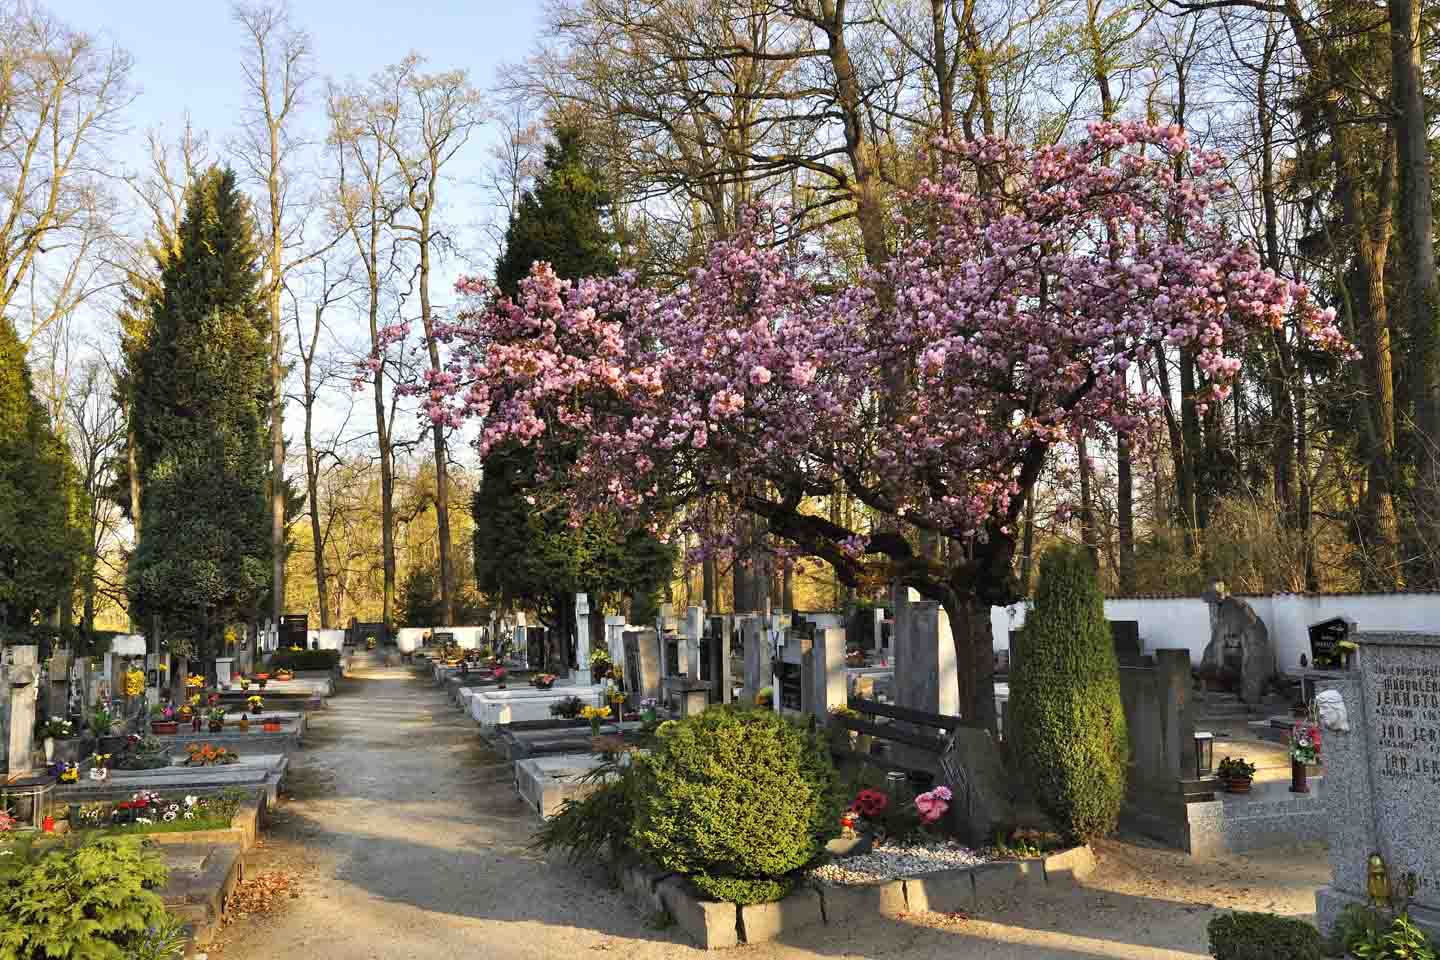 Mit Blumen geschmückte Gräber auf einem Friedhof mit einem in rosa blühenden Baum.